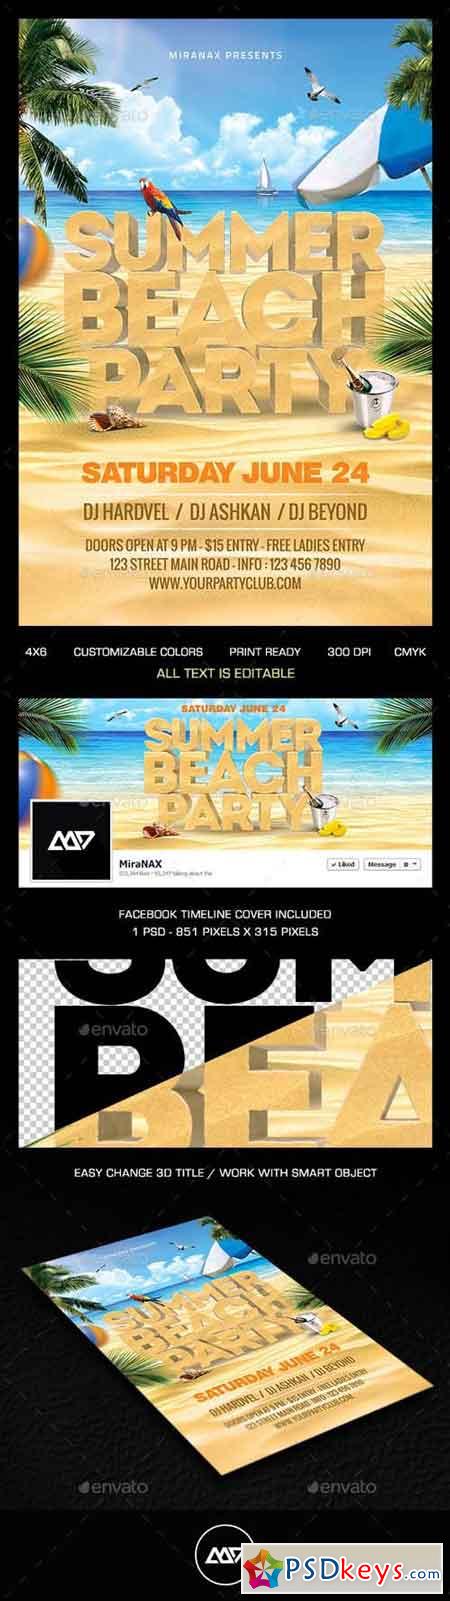 Summer Beach Party Flyer PSD Template 11170748